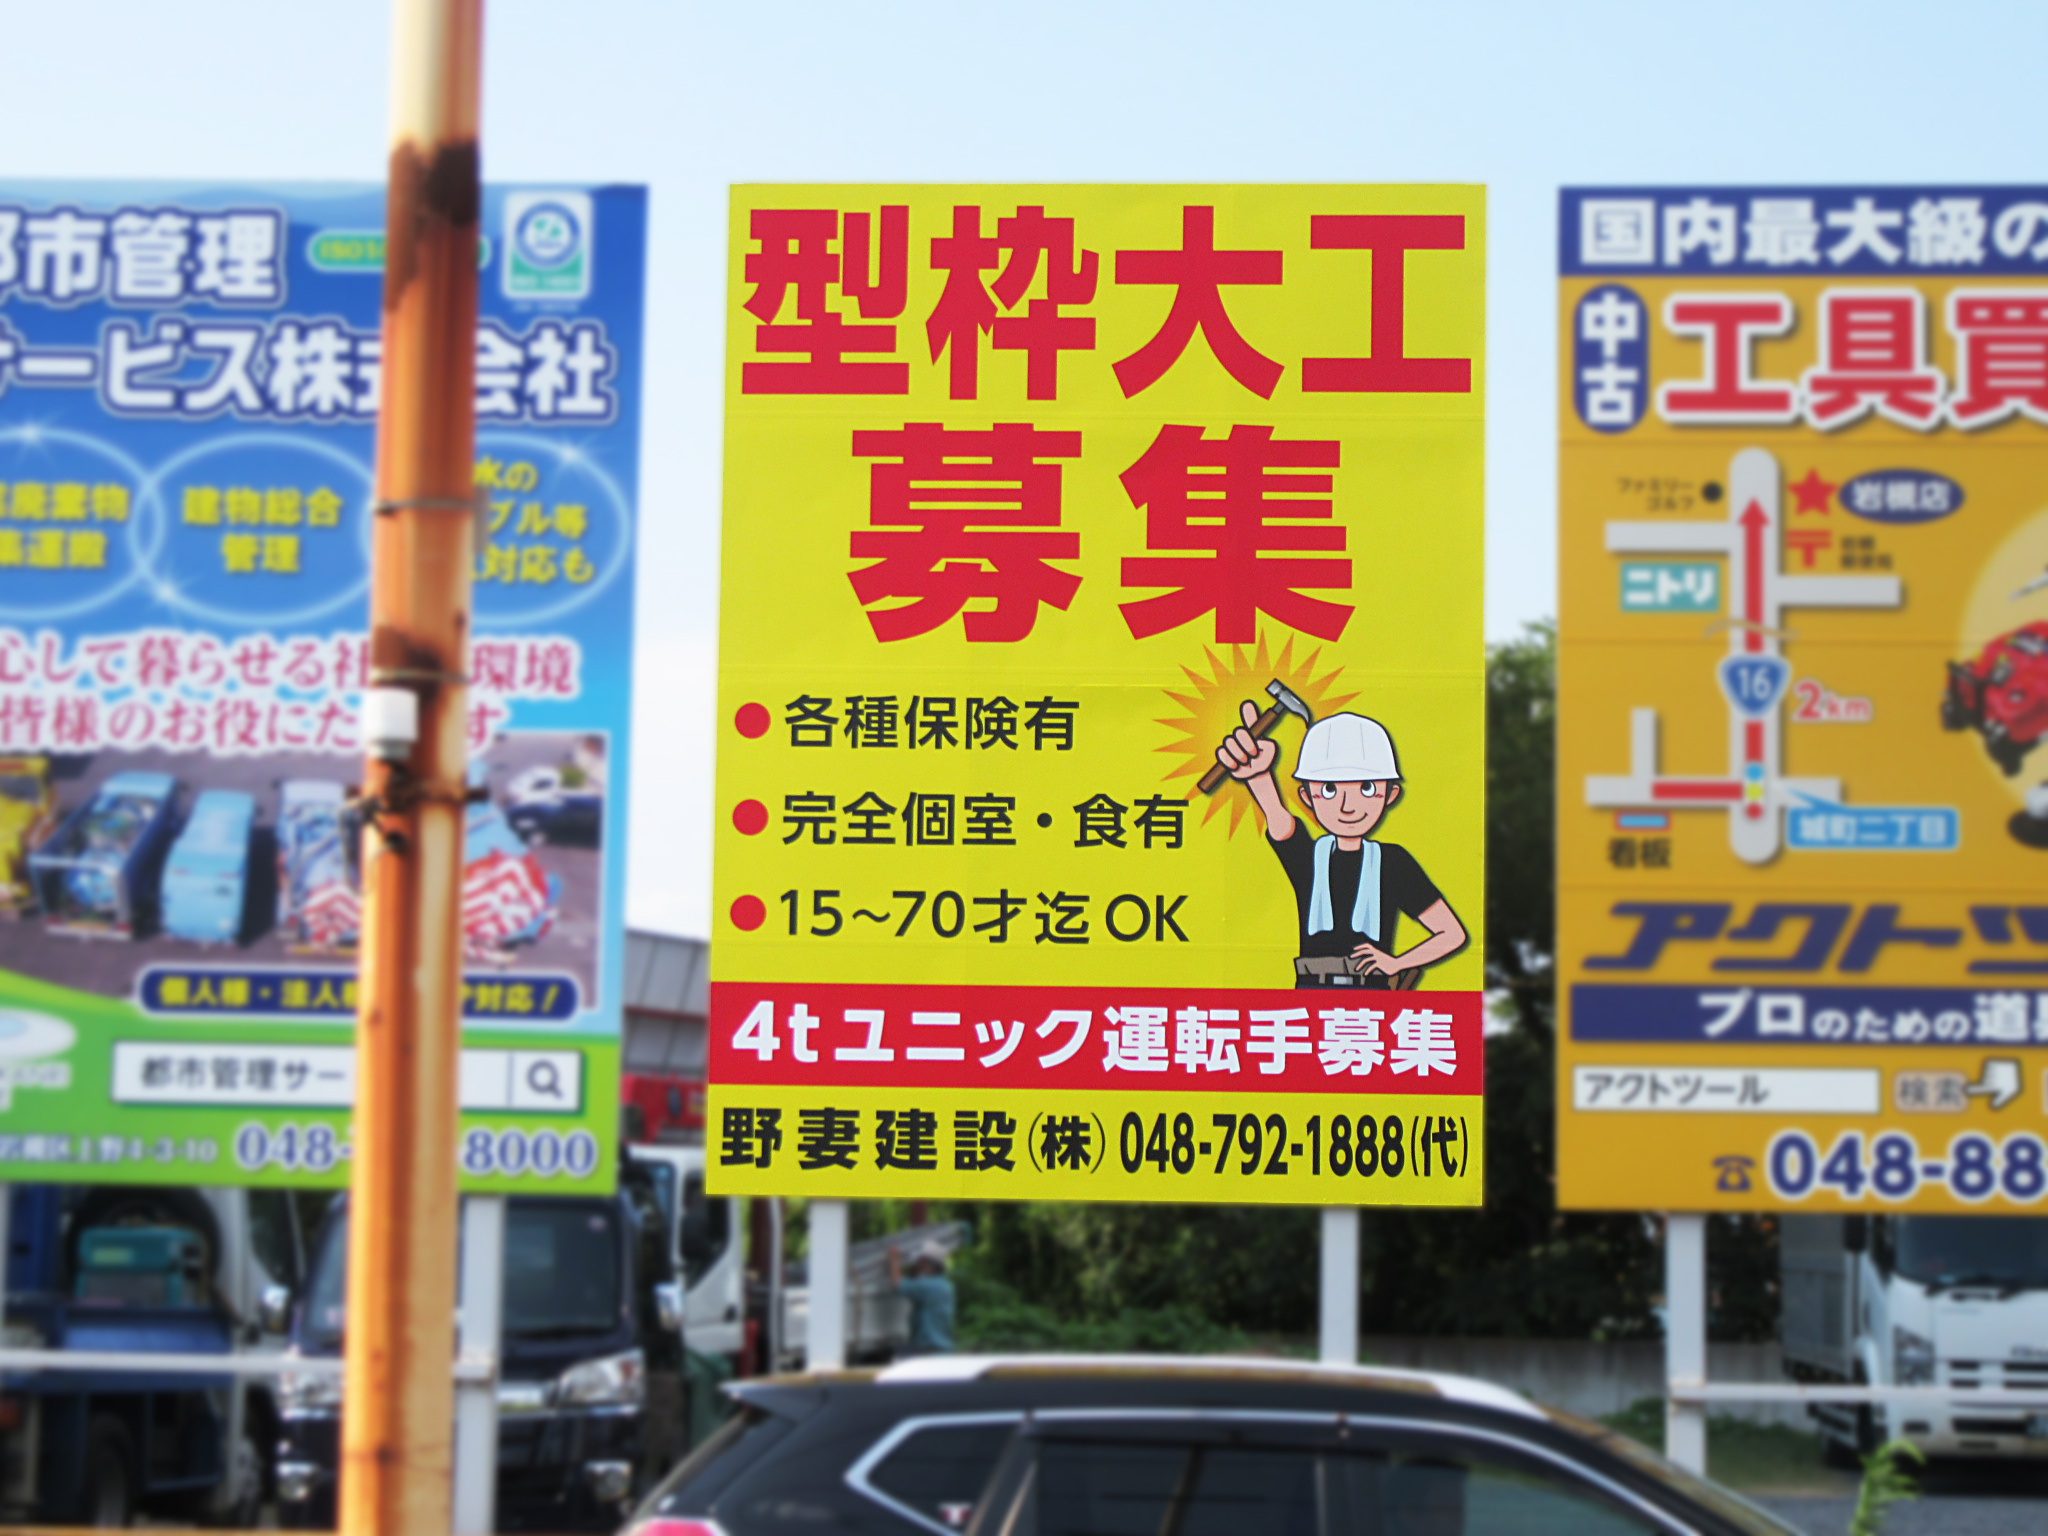 スーパービバホーム岩槻看板掲載 野立て看板 屋外広告は埼玉県の株式会社フィールド さいたま市